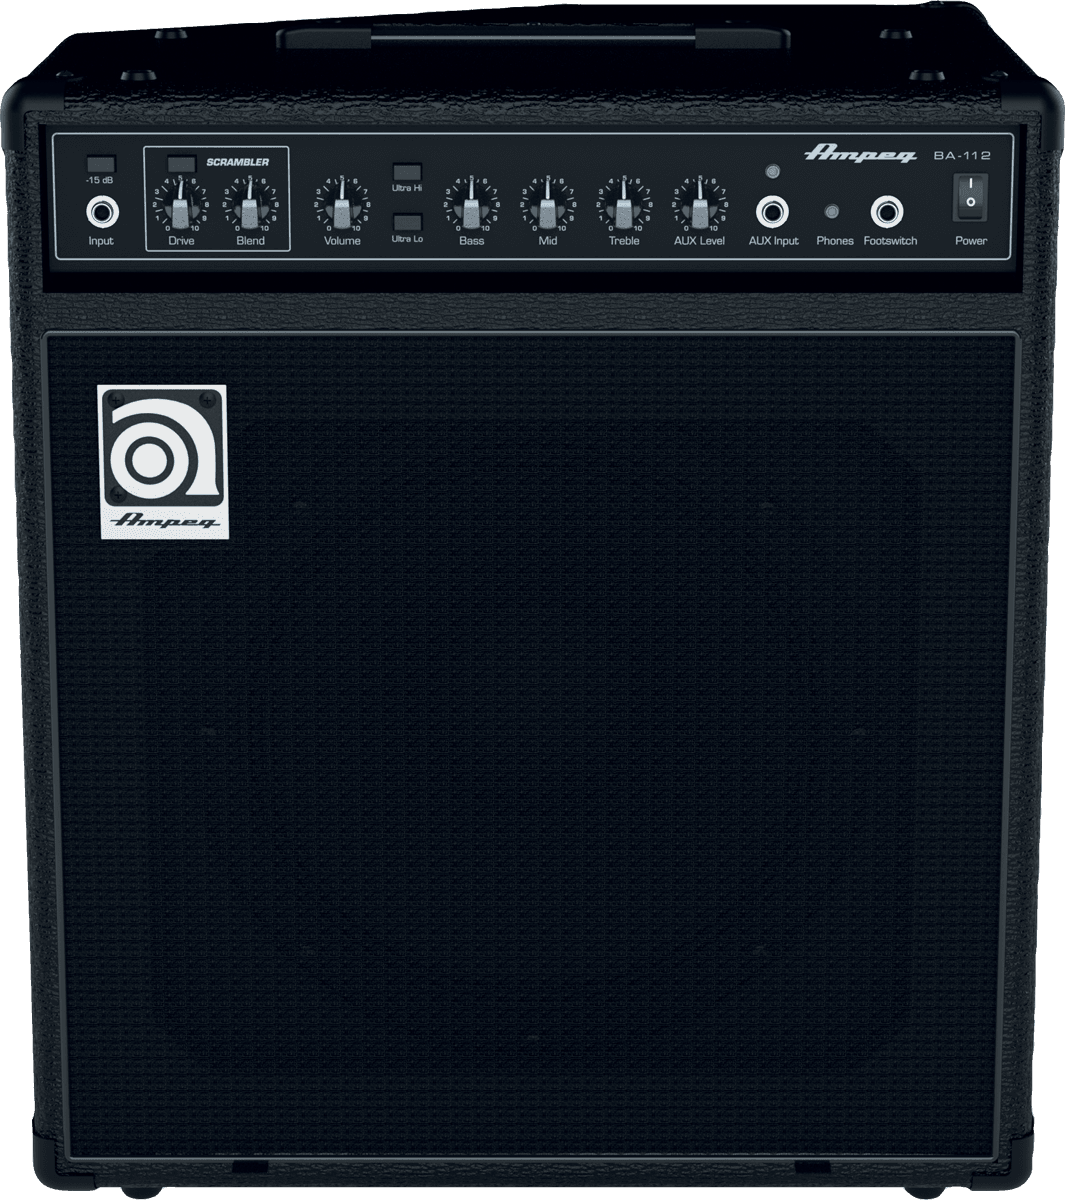 Ampeg Ba-112 V2 2014 75w 1x12 Black - Bass combo amp - Variation 1